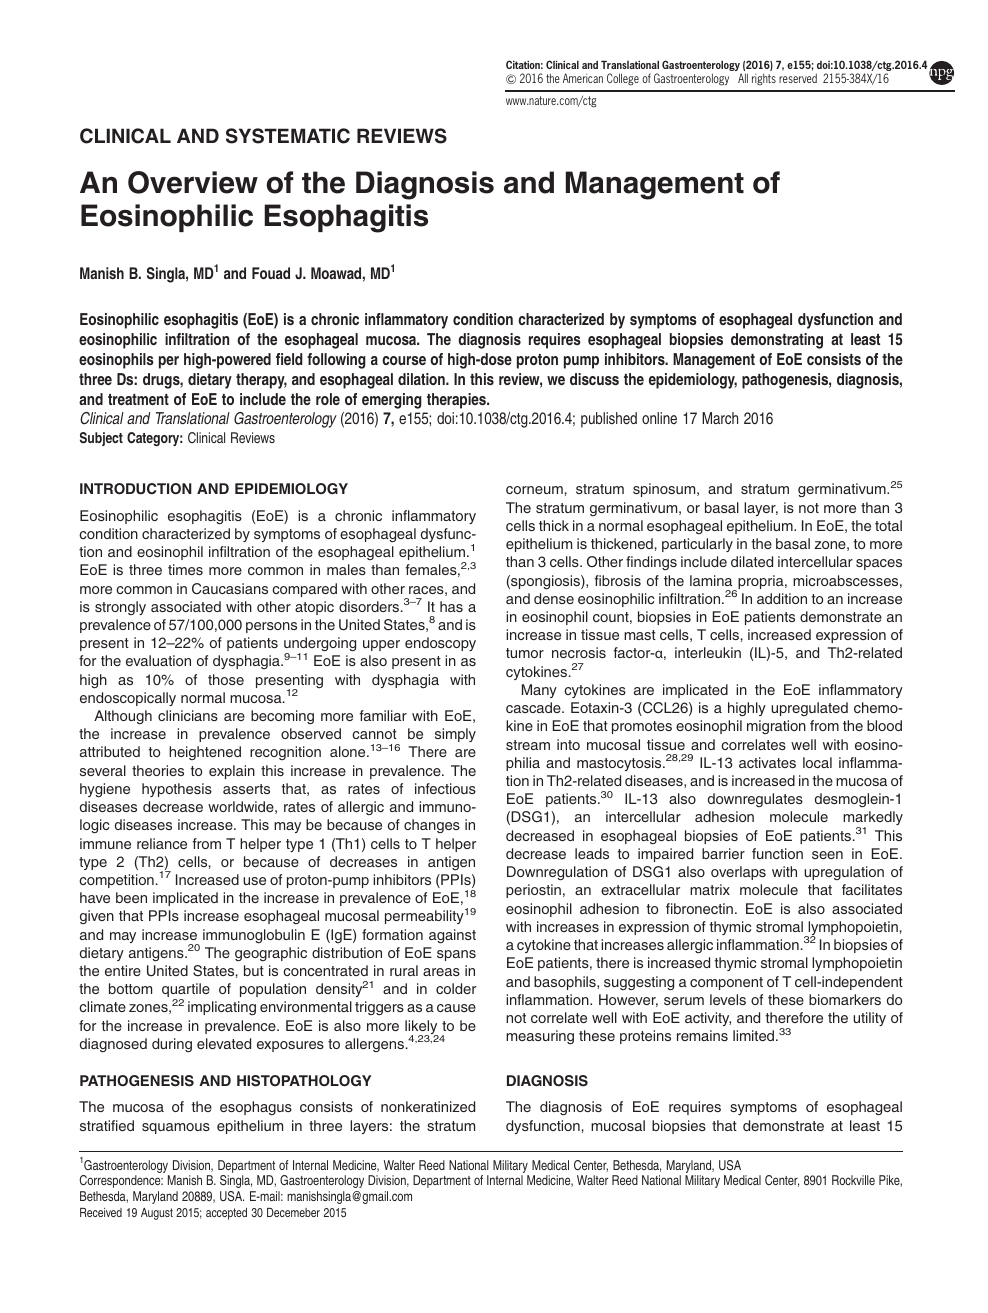 eosinophilic esophagitis pathogenesis